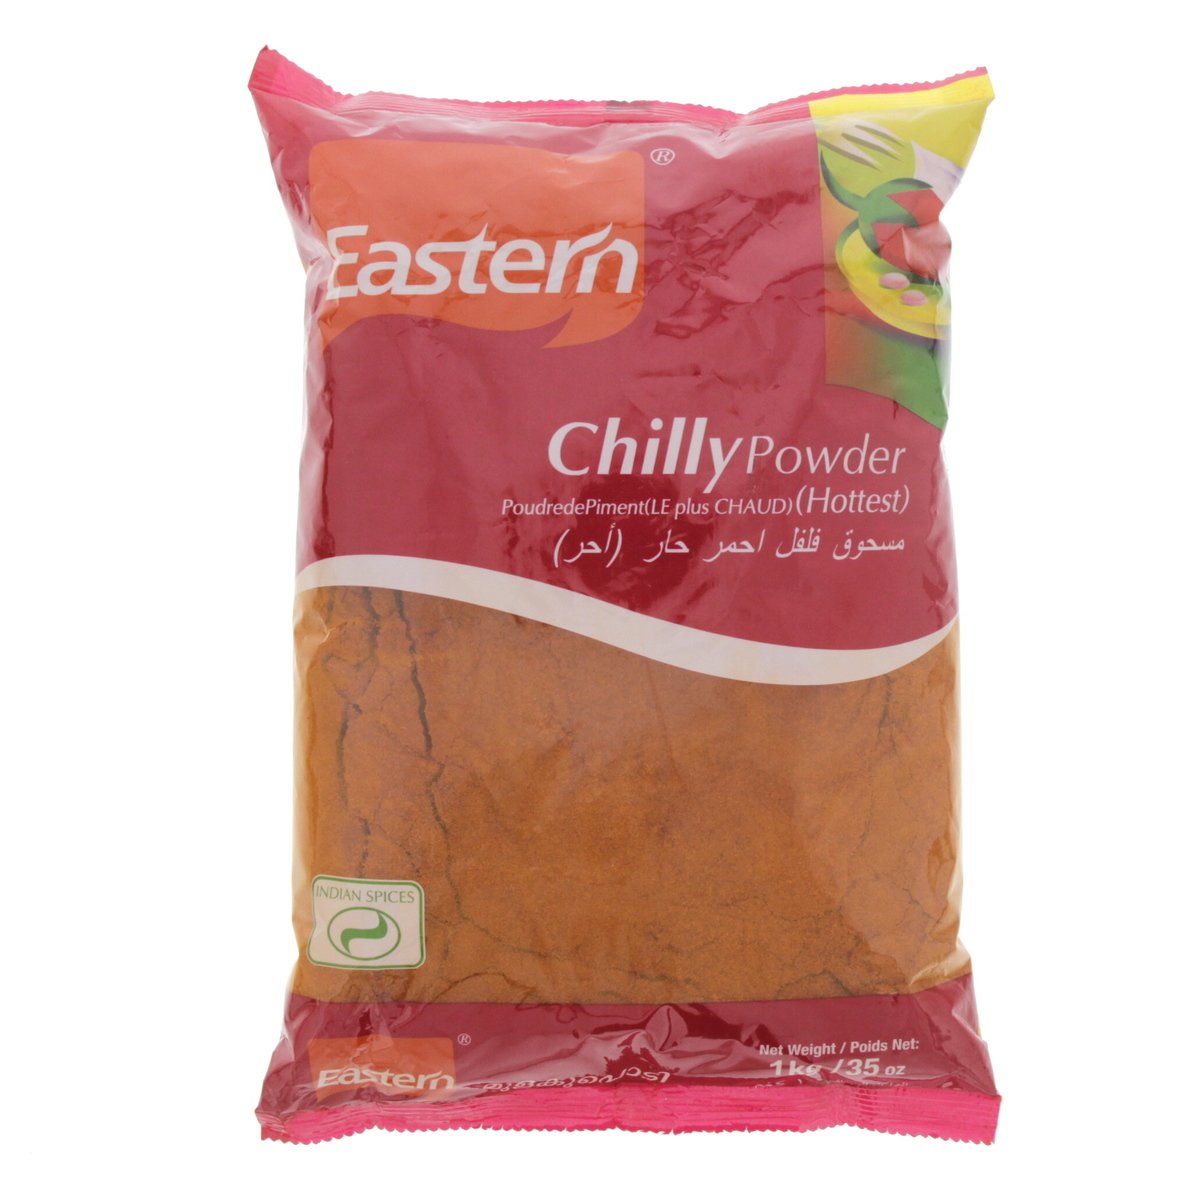 Eastern Chilli Powder 1kg